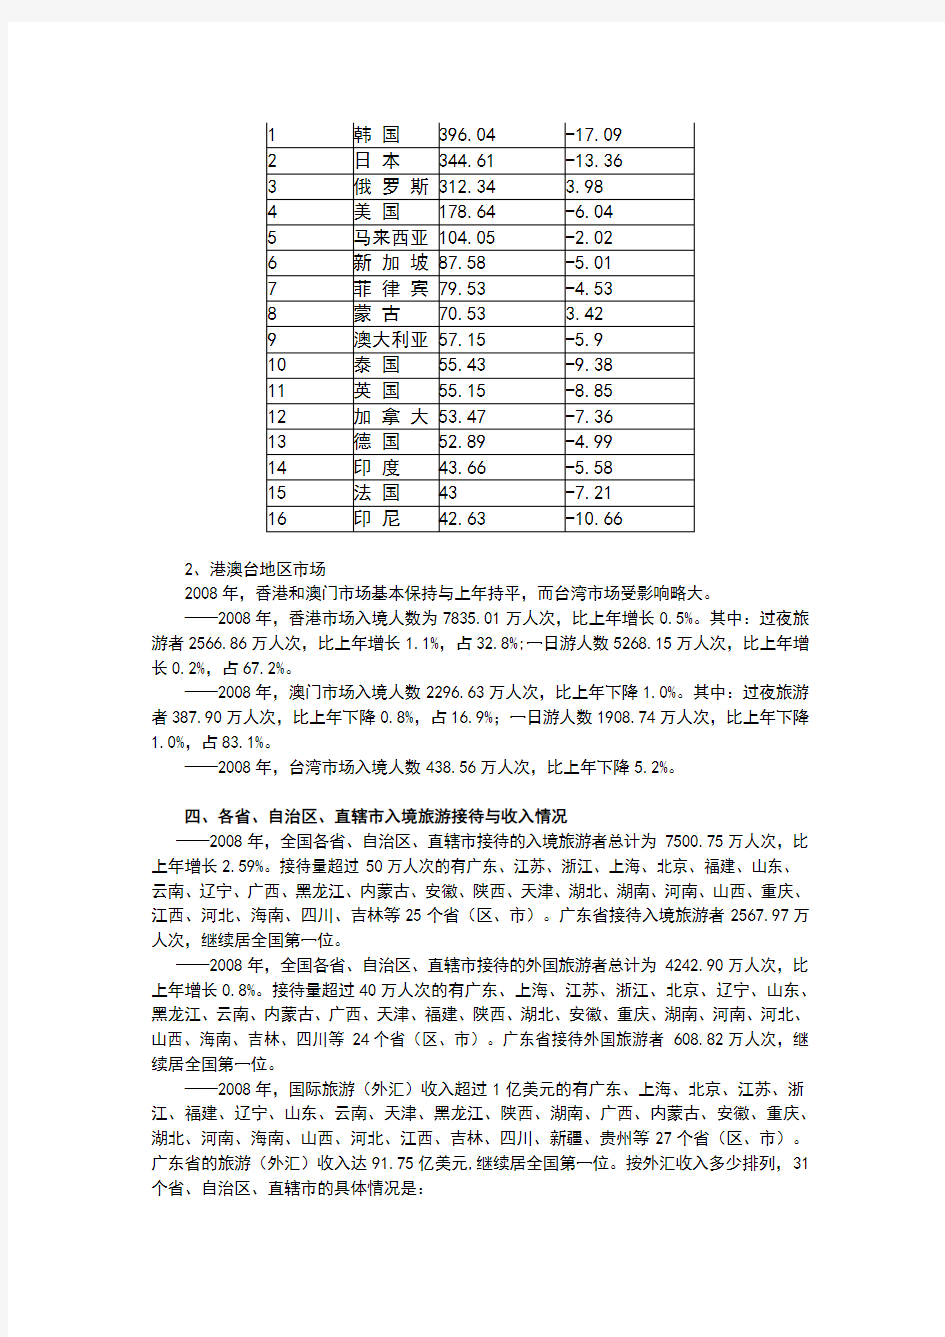 2008年中国旅游业统计公报